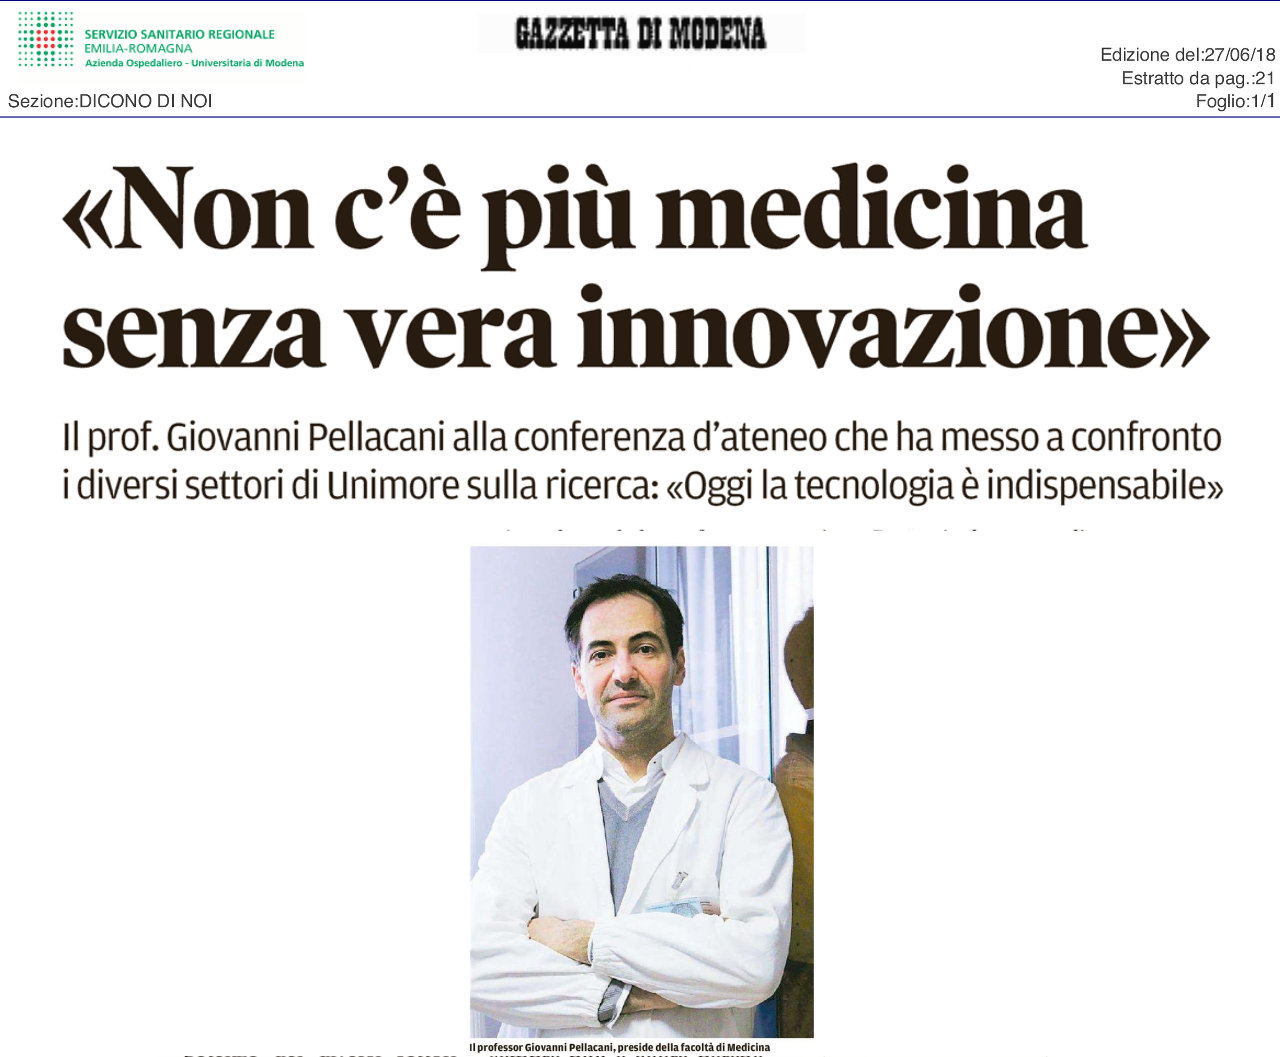 Non c'è più medicina senza vera innovazione